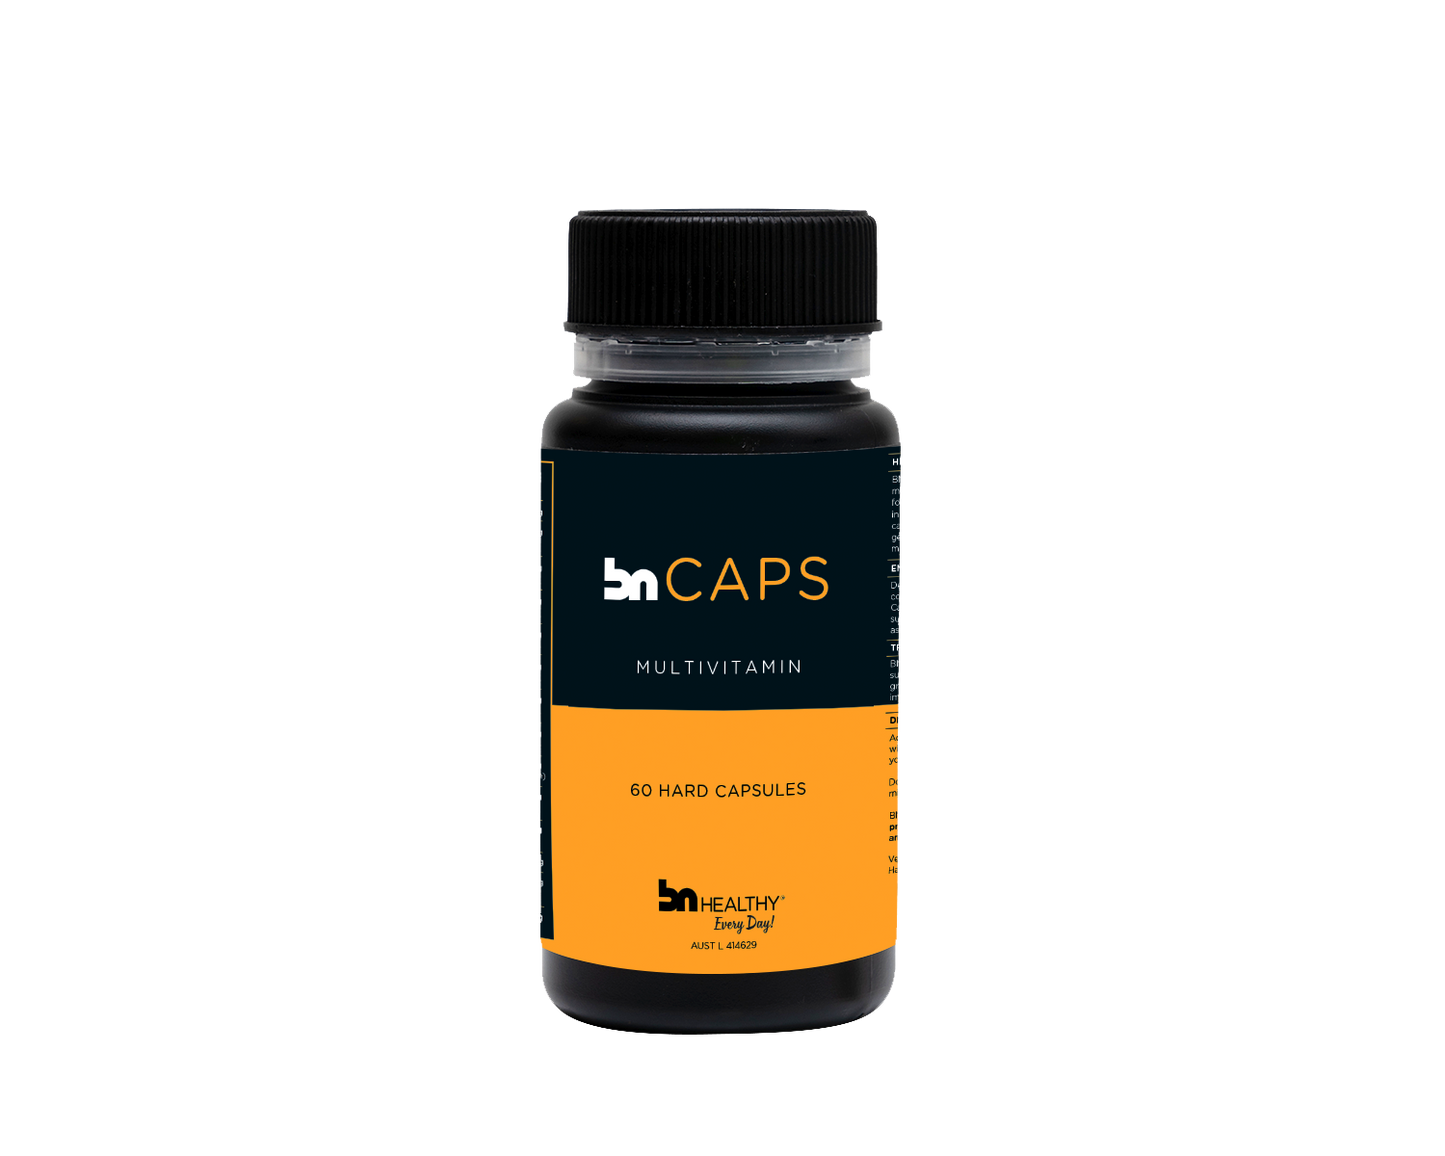 BN Caps - Multivitamin Capsules - 3 Bottles - Save 15%